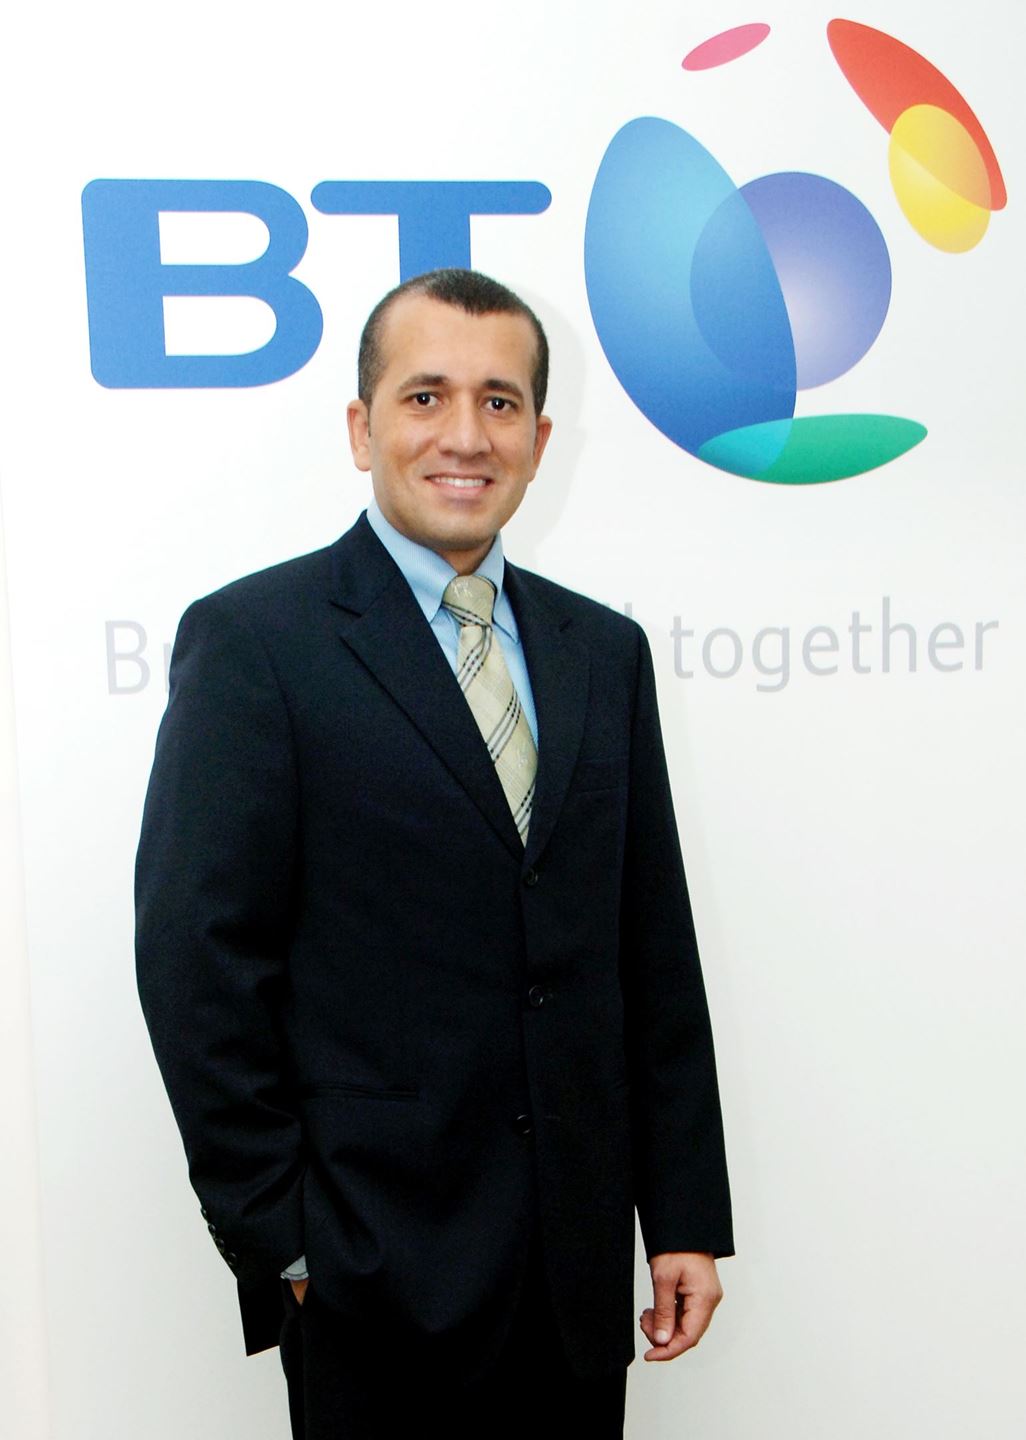 السيد وائل القباني، نائب الرئيس لمنطقة الشرق الأوسط وشمال إفريقيا في مجموعة بي تي